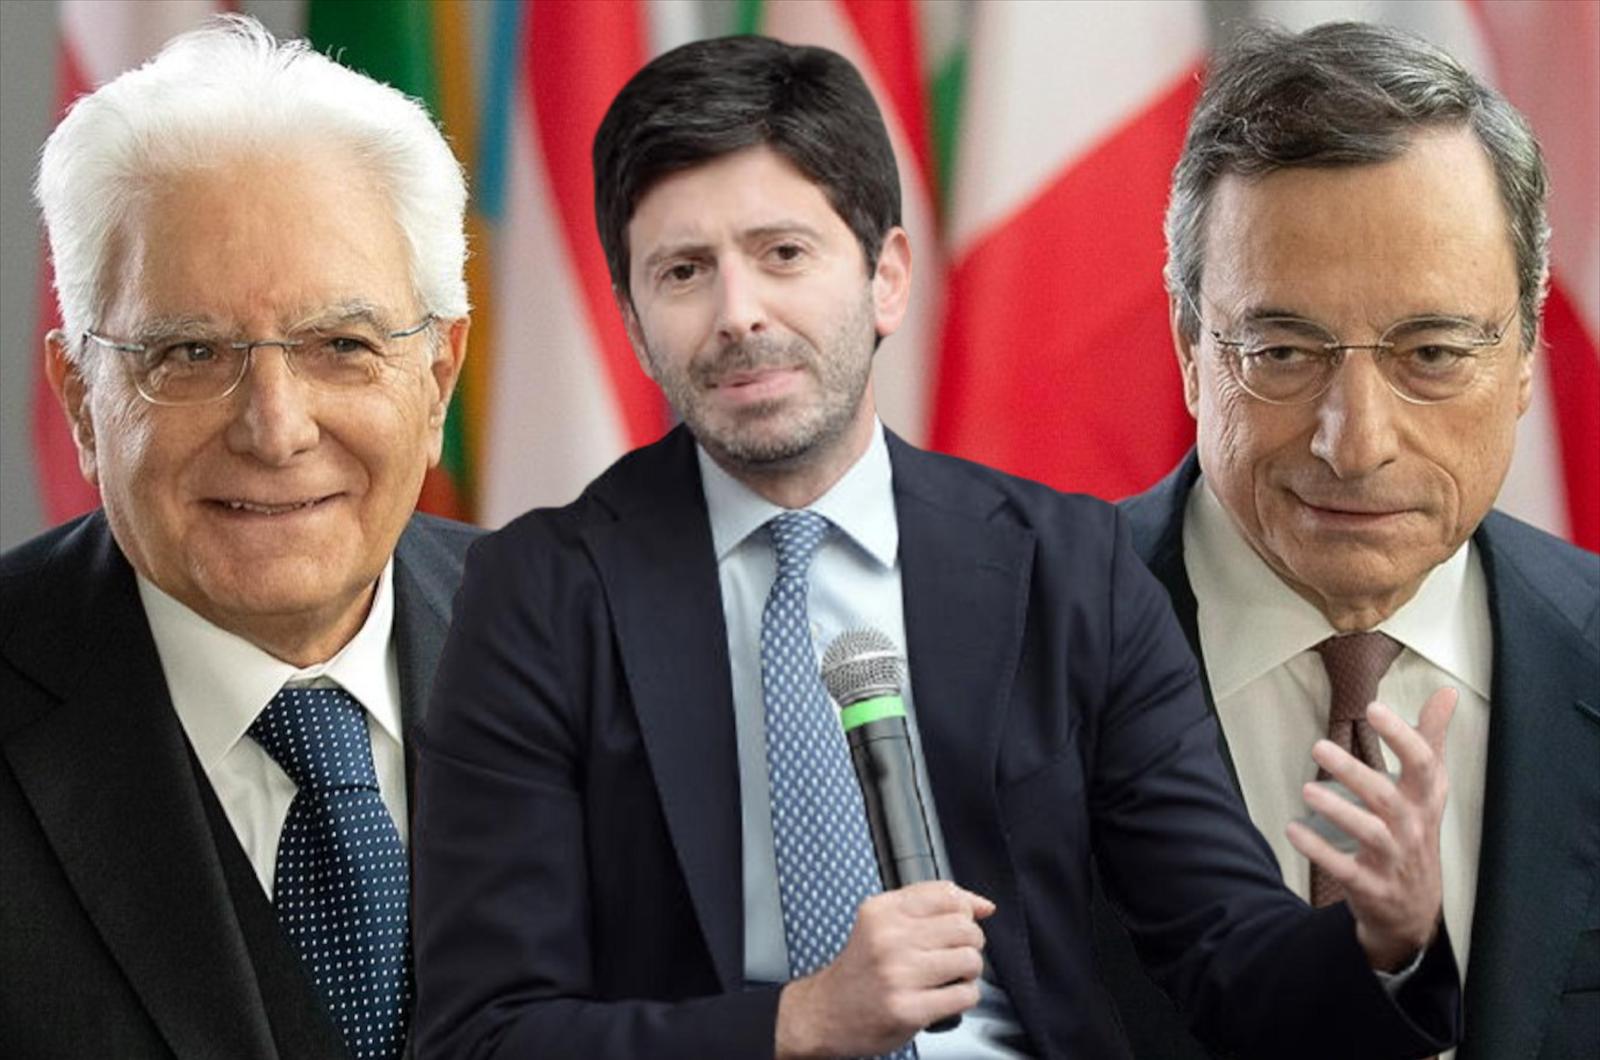 Interruzione della continuità territoriale”. La denuncia contro Draghi, Speranza e Mattarella - Il Paragone